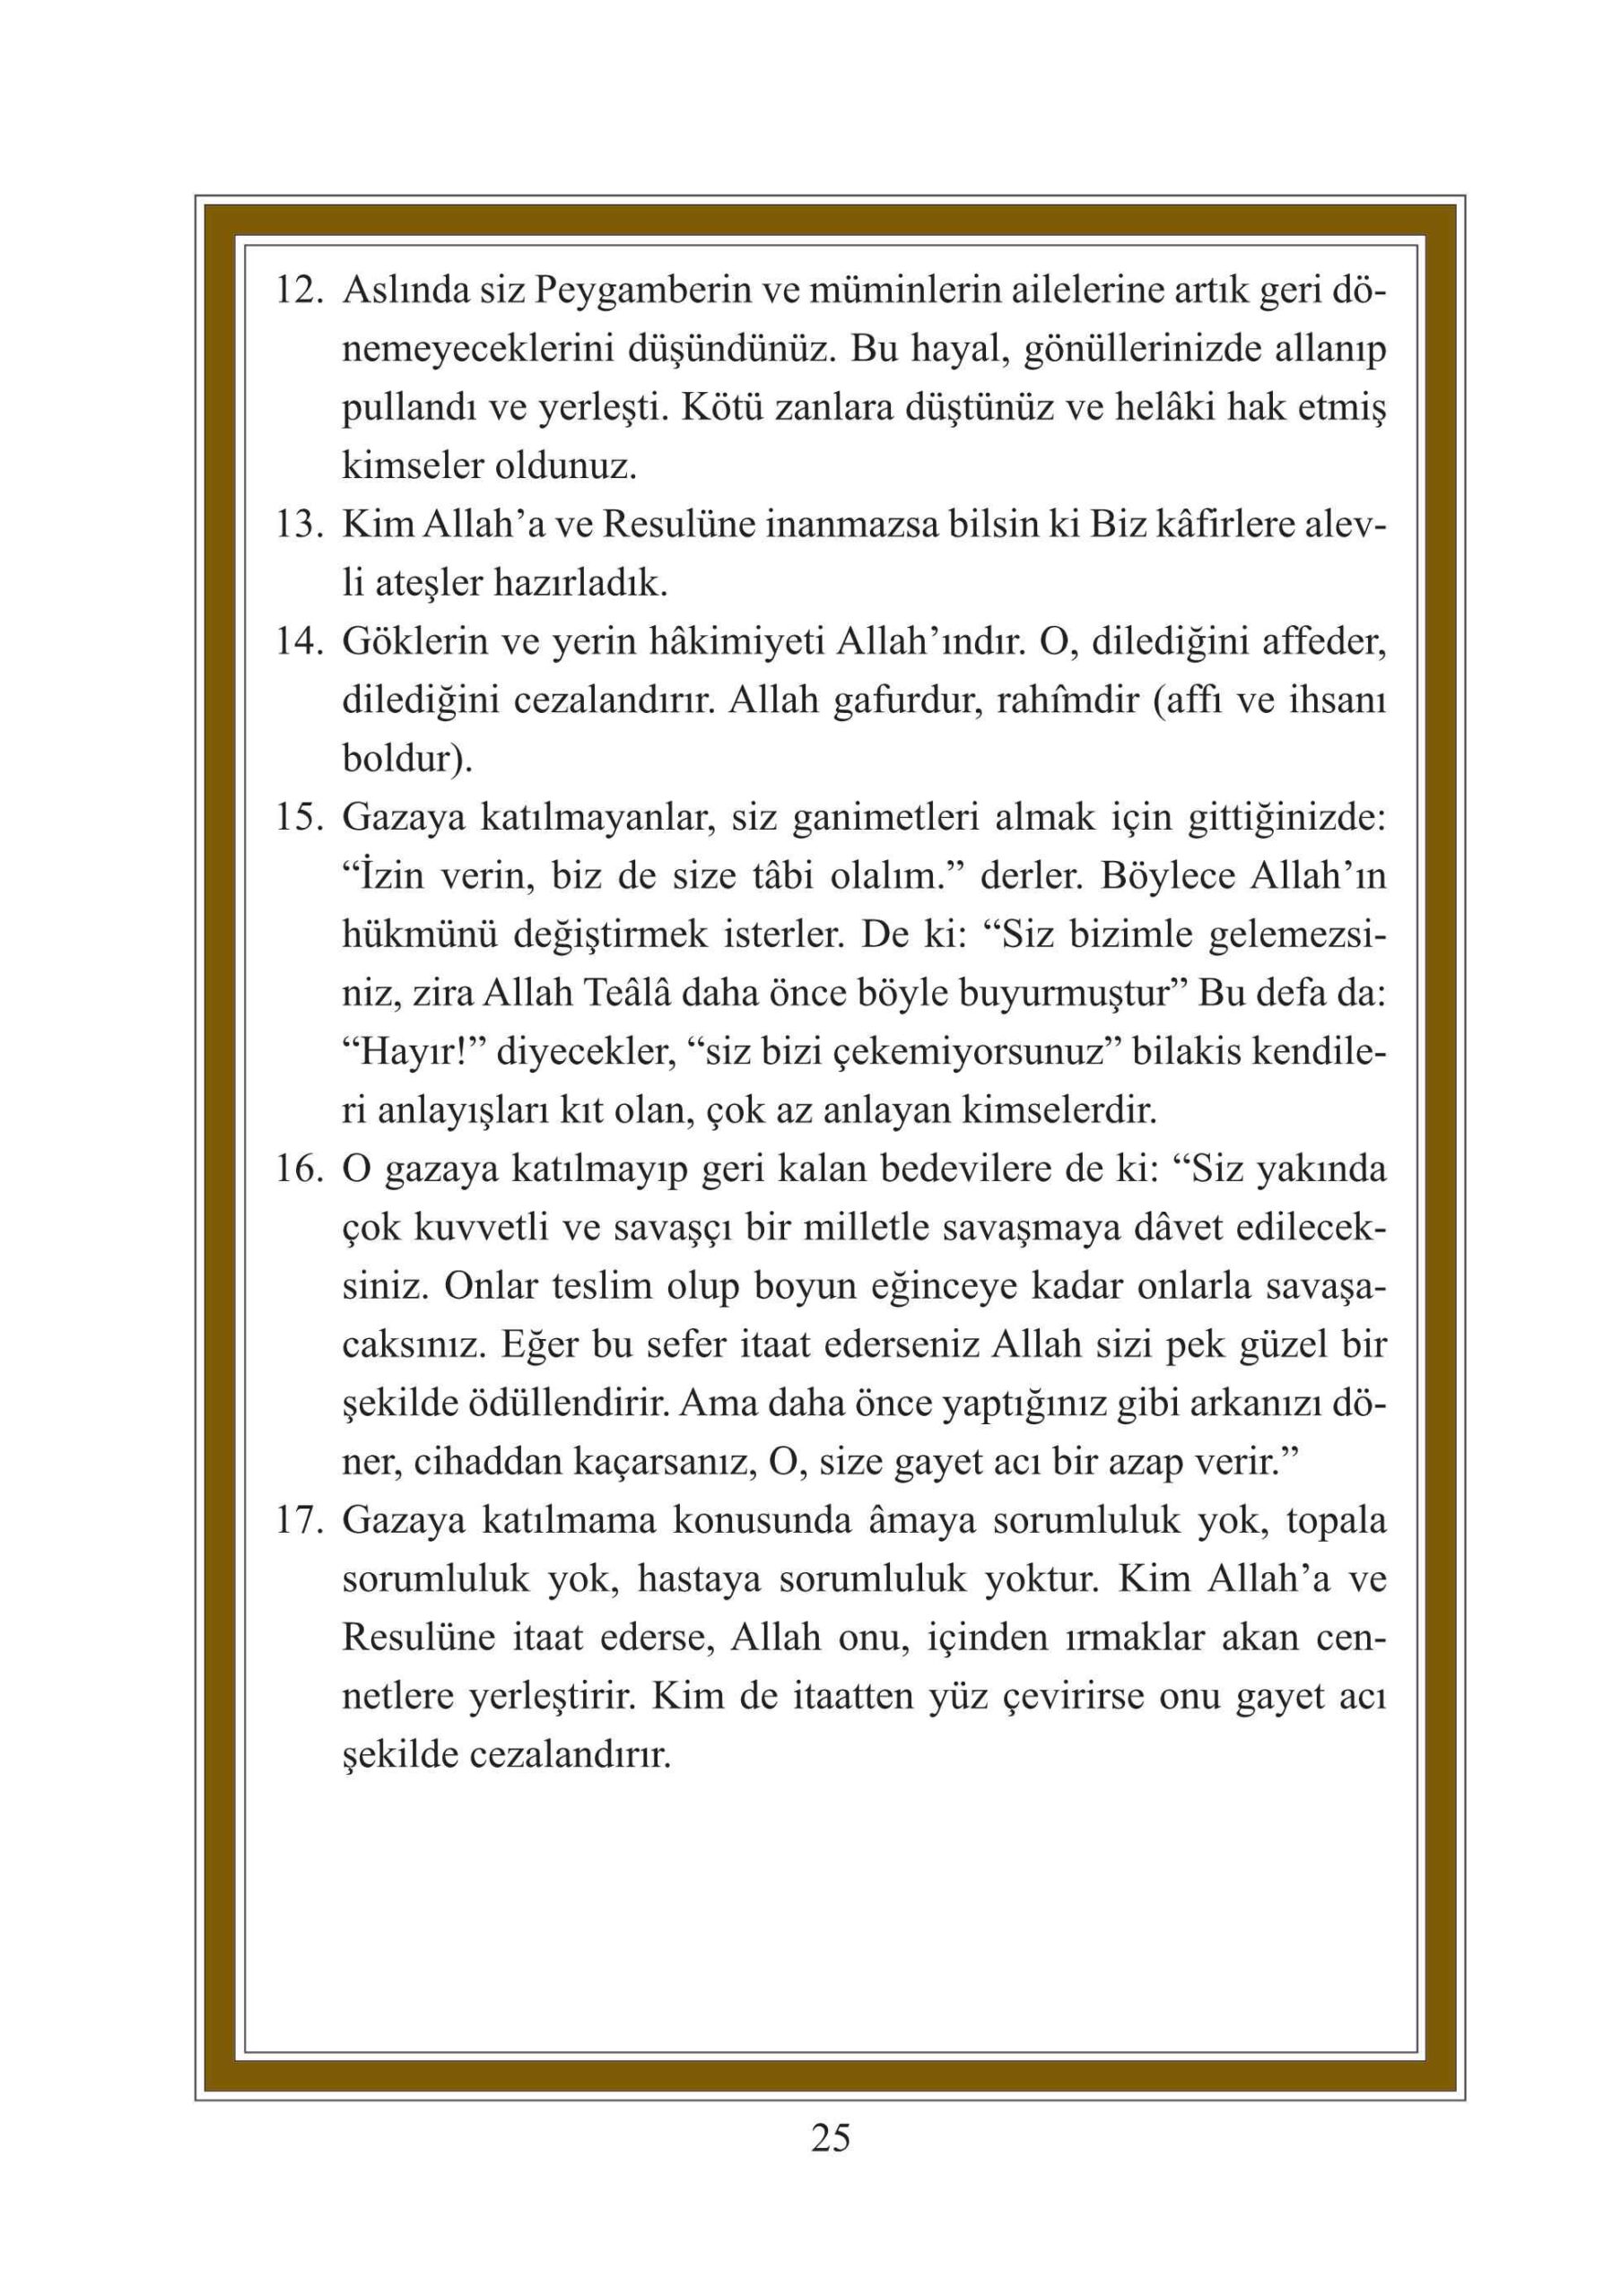 Mealli Yasini Serif Sureler ve Namaz Dualari - DefineYayinlari.pdf, 78-Sayfa 